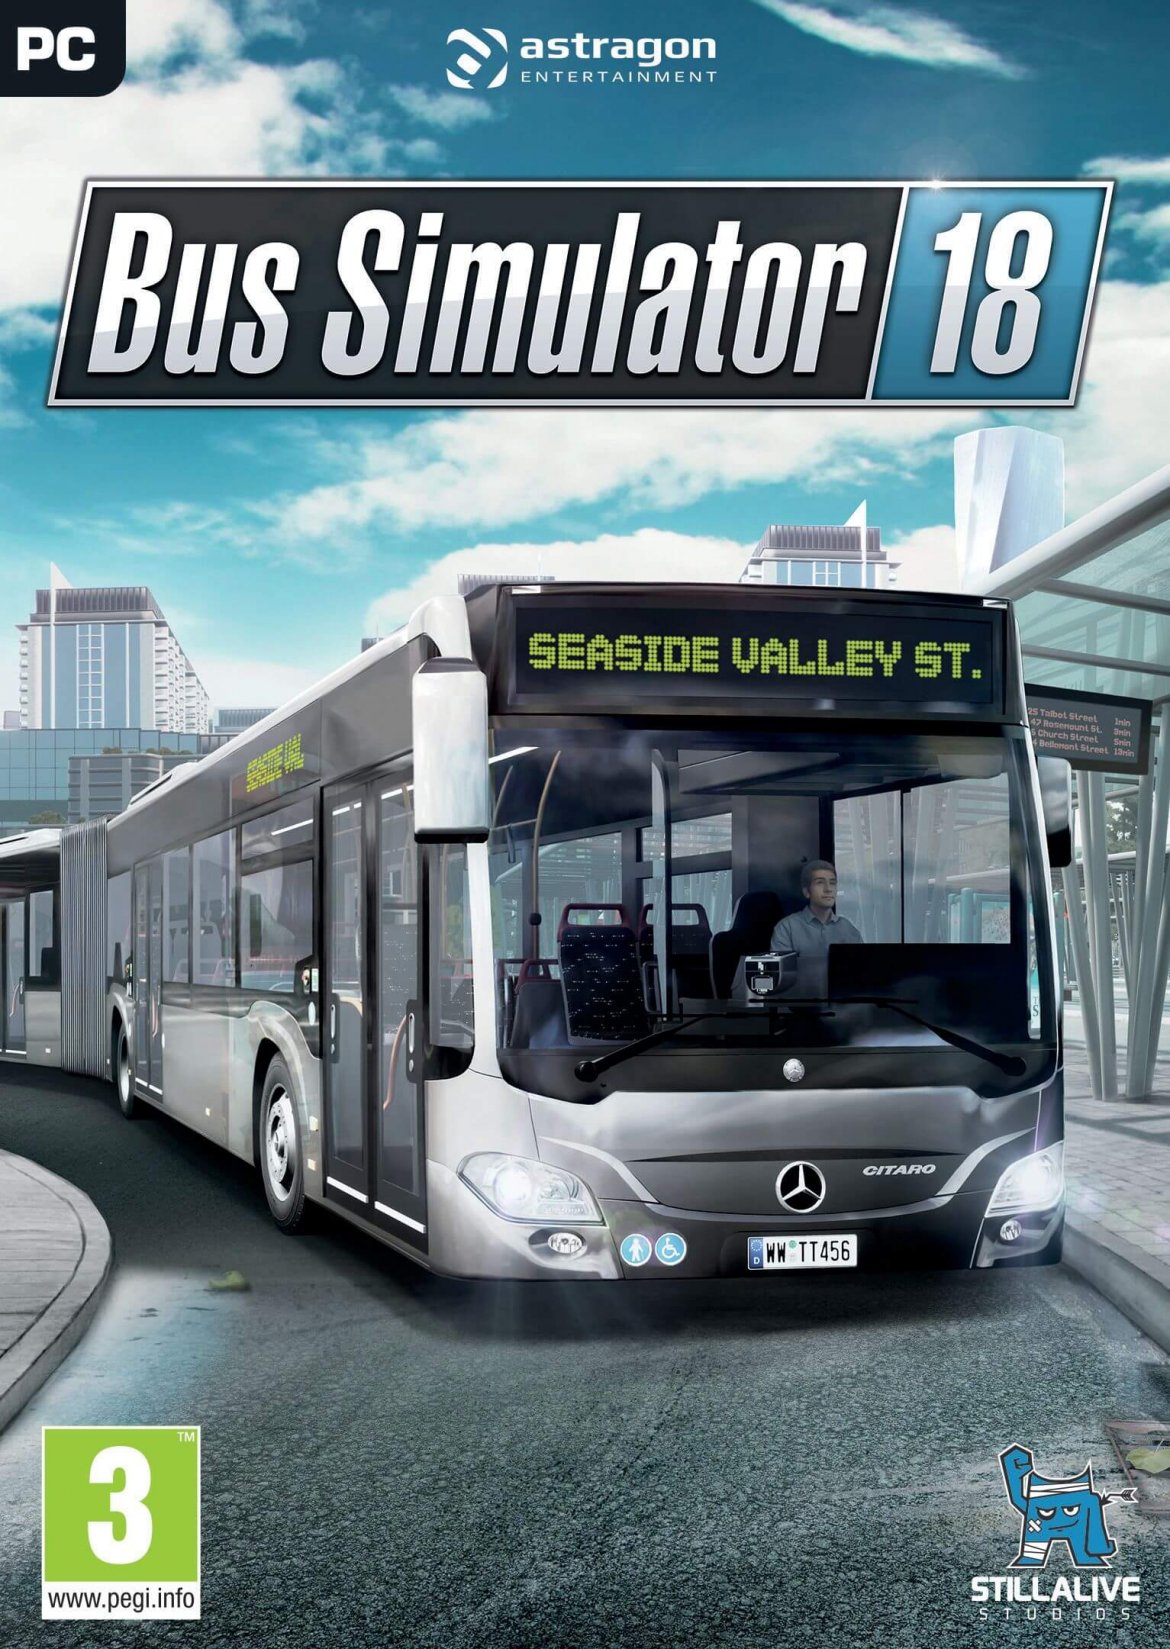 bus simulator 18 free download crack